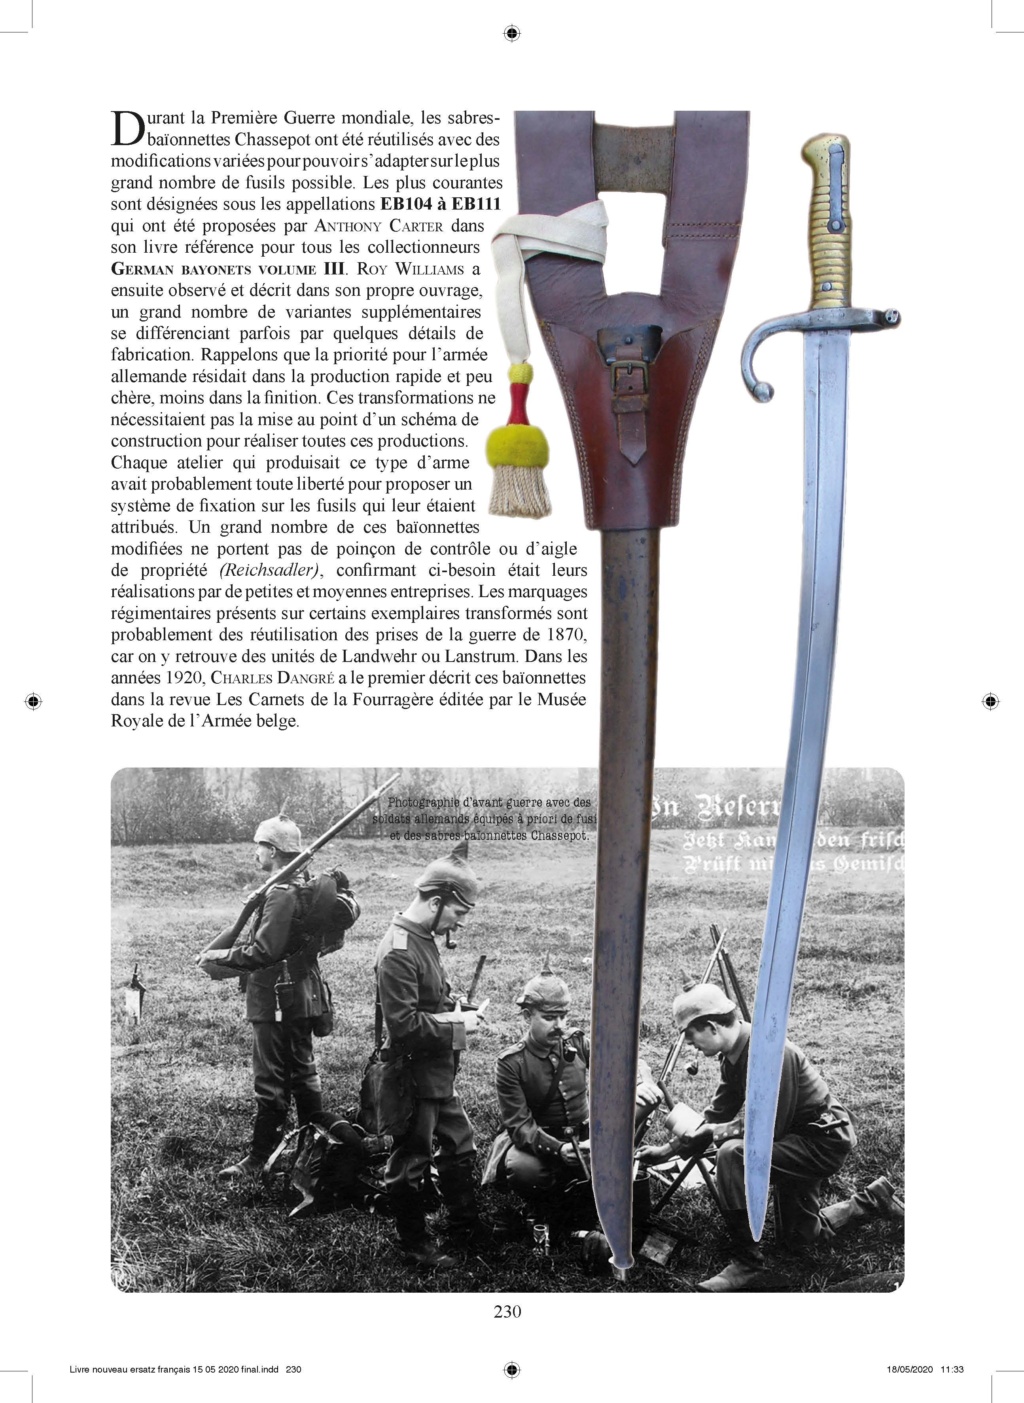 Le fusil Chassepot et la guerre de 1870. - Page 6 Pages_16